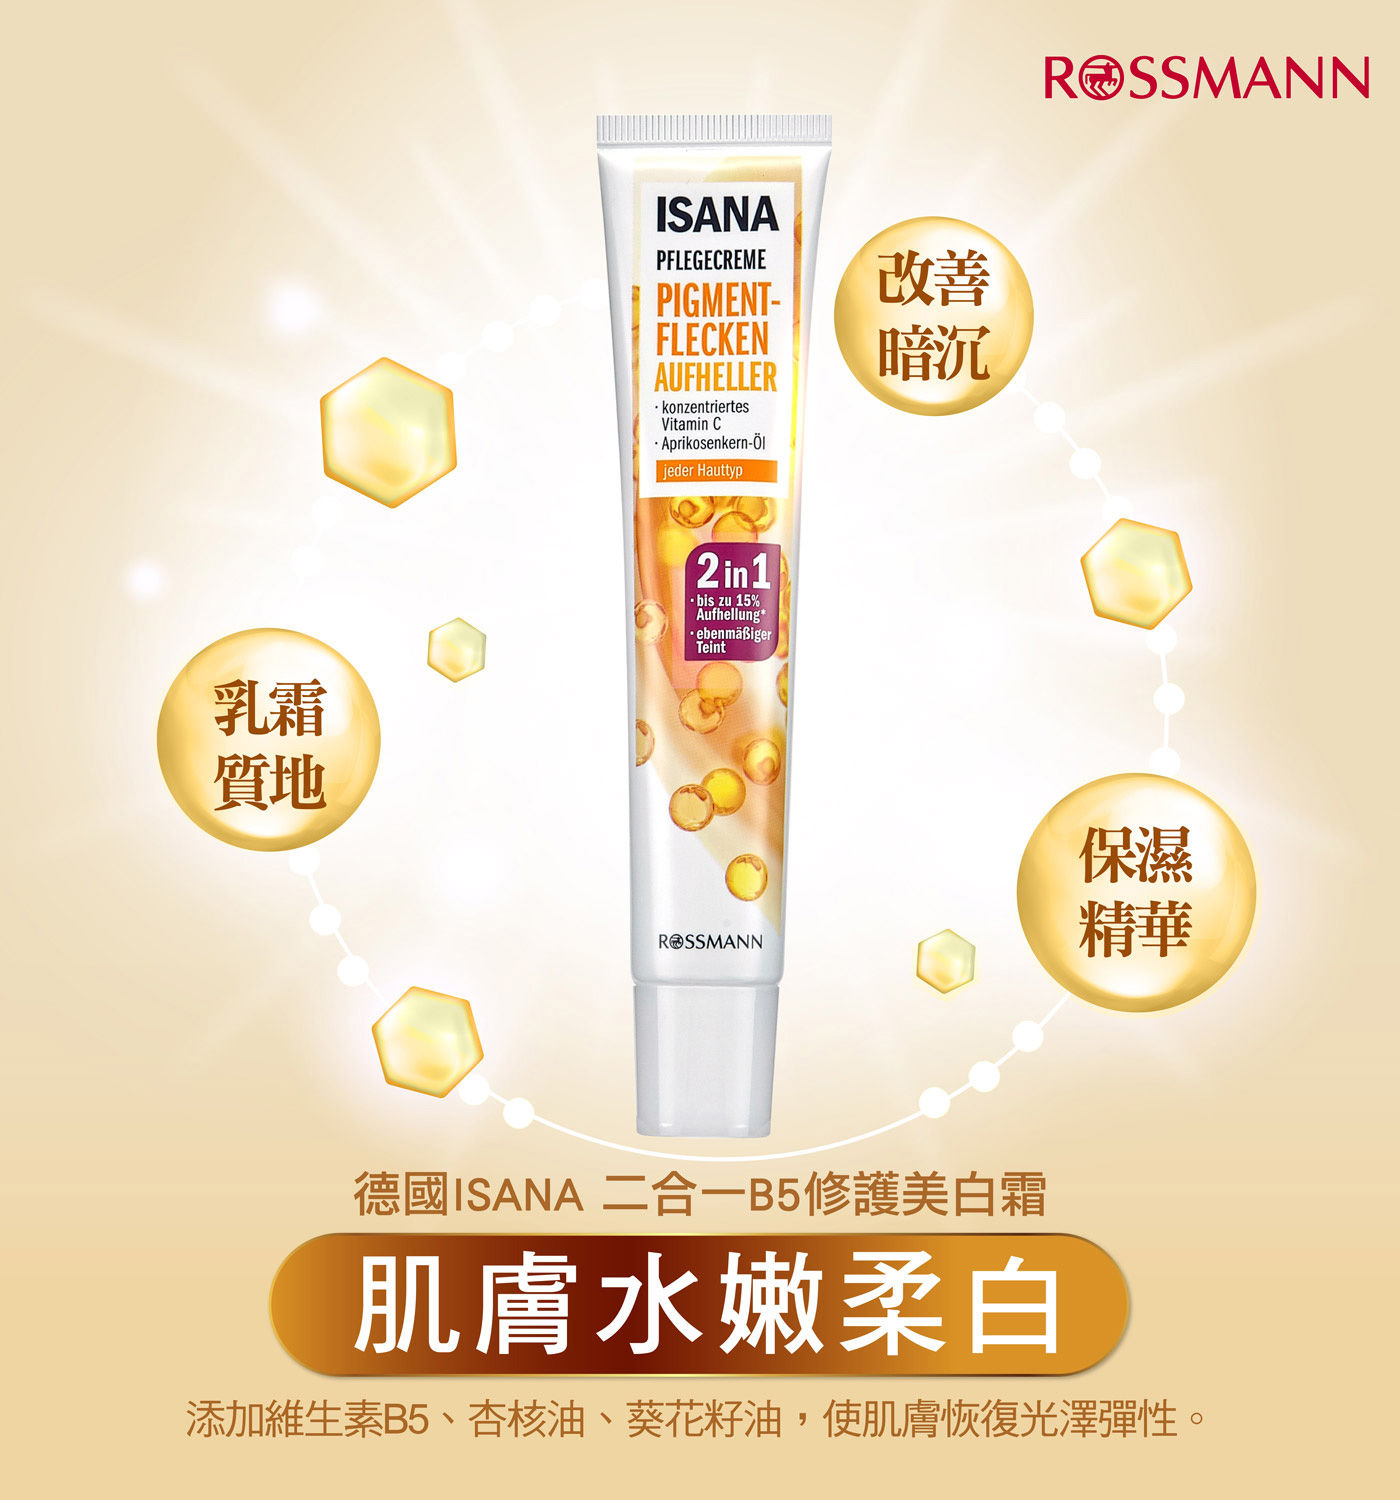 ISANA 二合一B5修護美白霜 添加維生素B5、杏核油、葵花籽油，使肌膚恢復光澤彈性